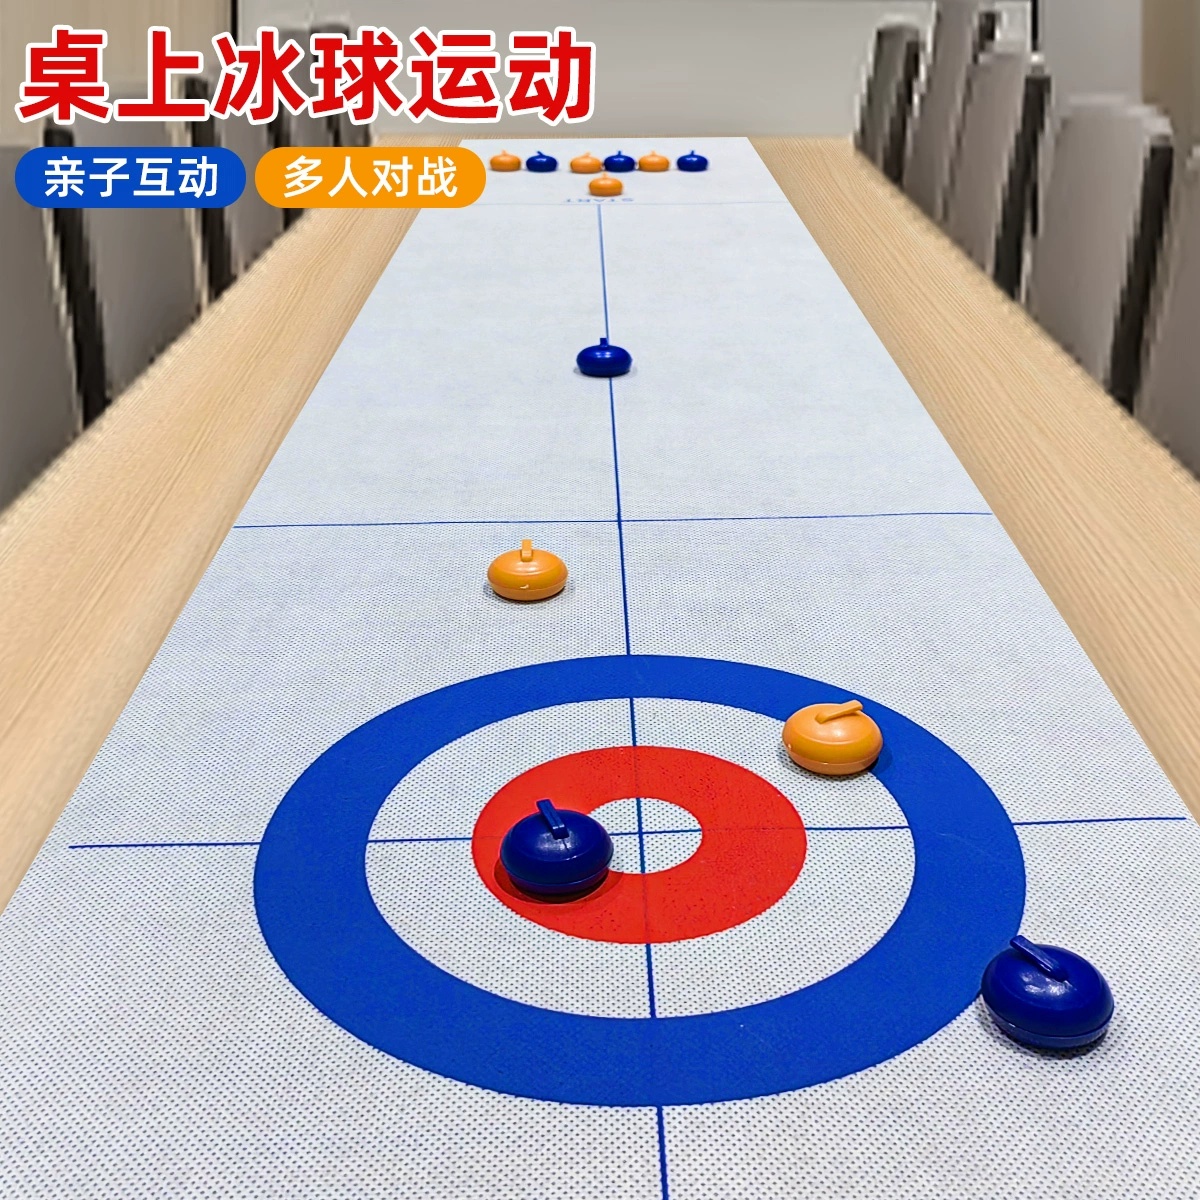 桌面冰壶球tablecurling亲子游戏桌游板式球玩具道具活动